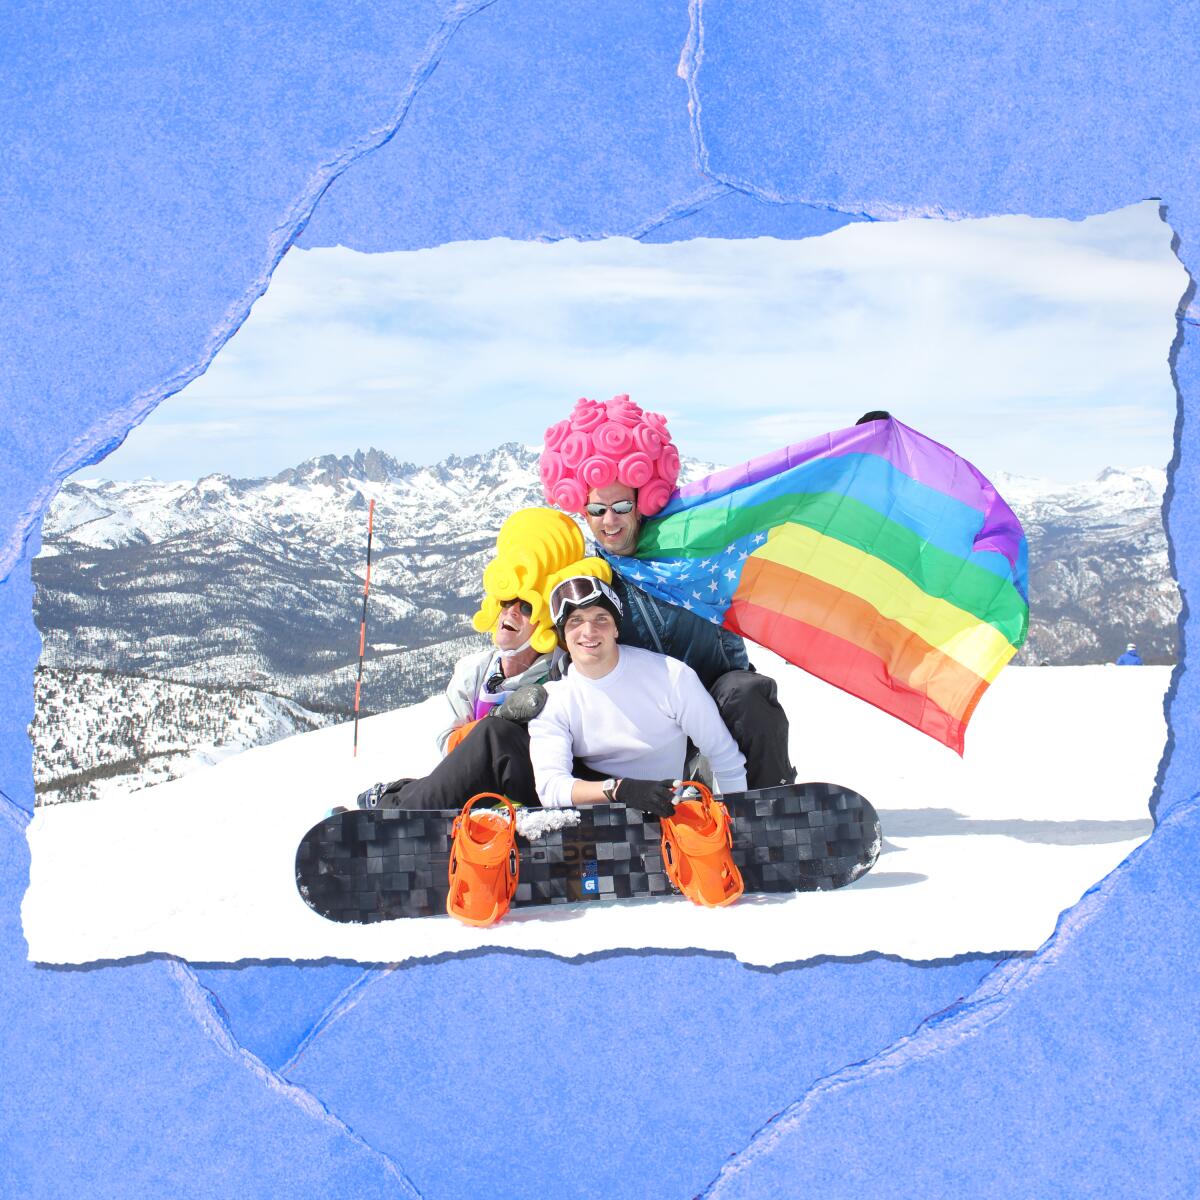 Personas con pelucas de colores en lo alto de una montaña nevada. Uno sostiene bandera de arco iris.